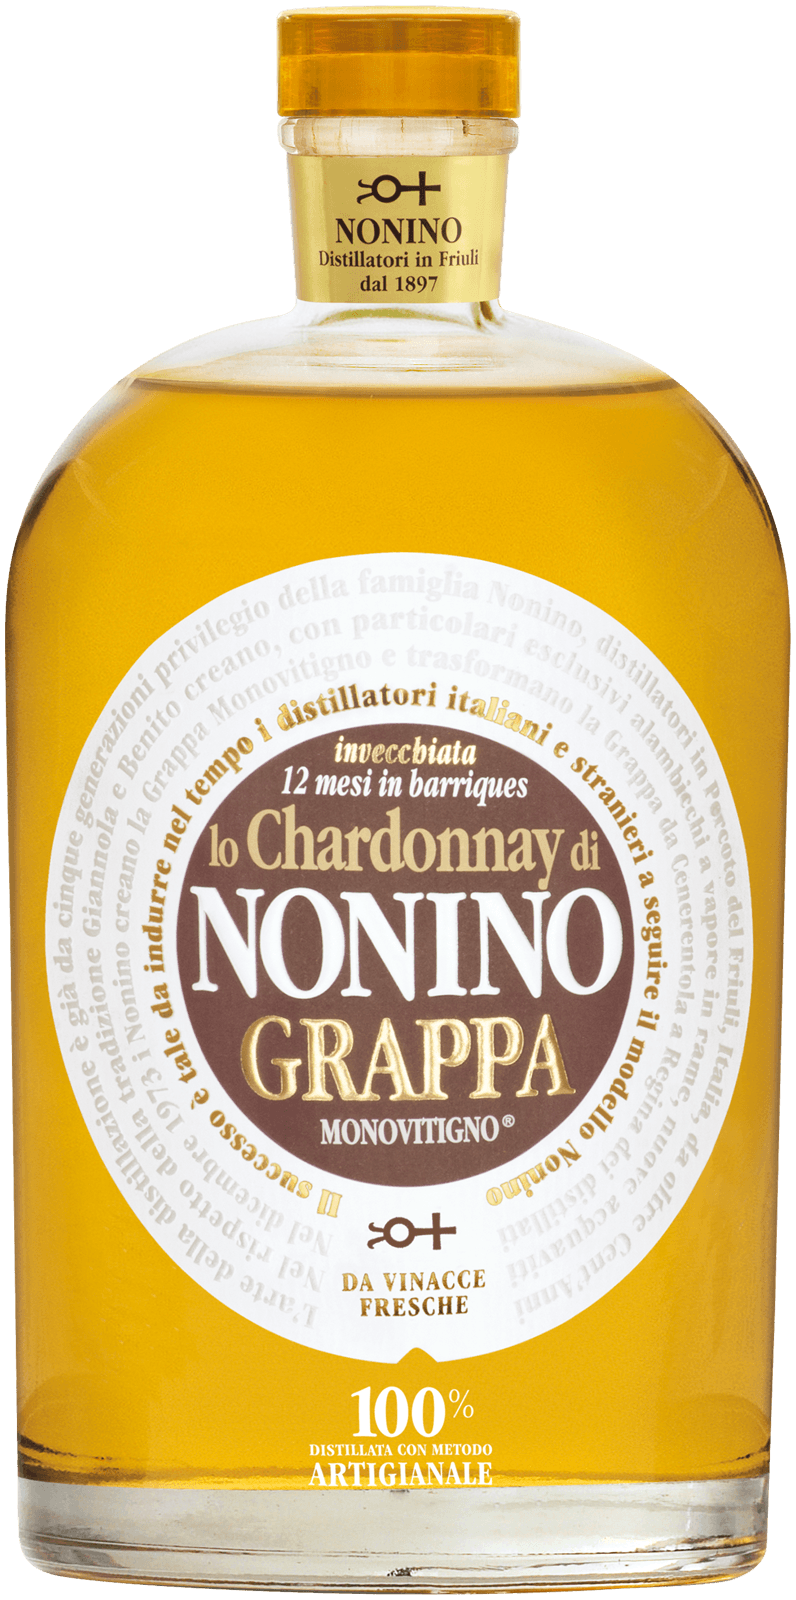 Nonino Grappa Lo Chardonnay Monovitigno 700ml